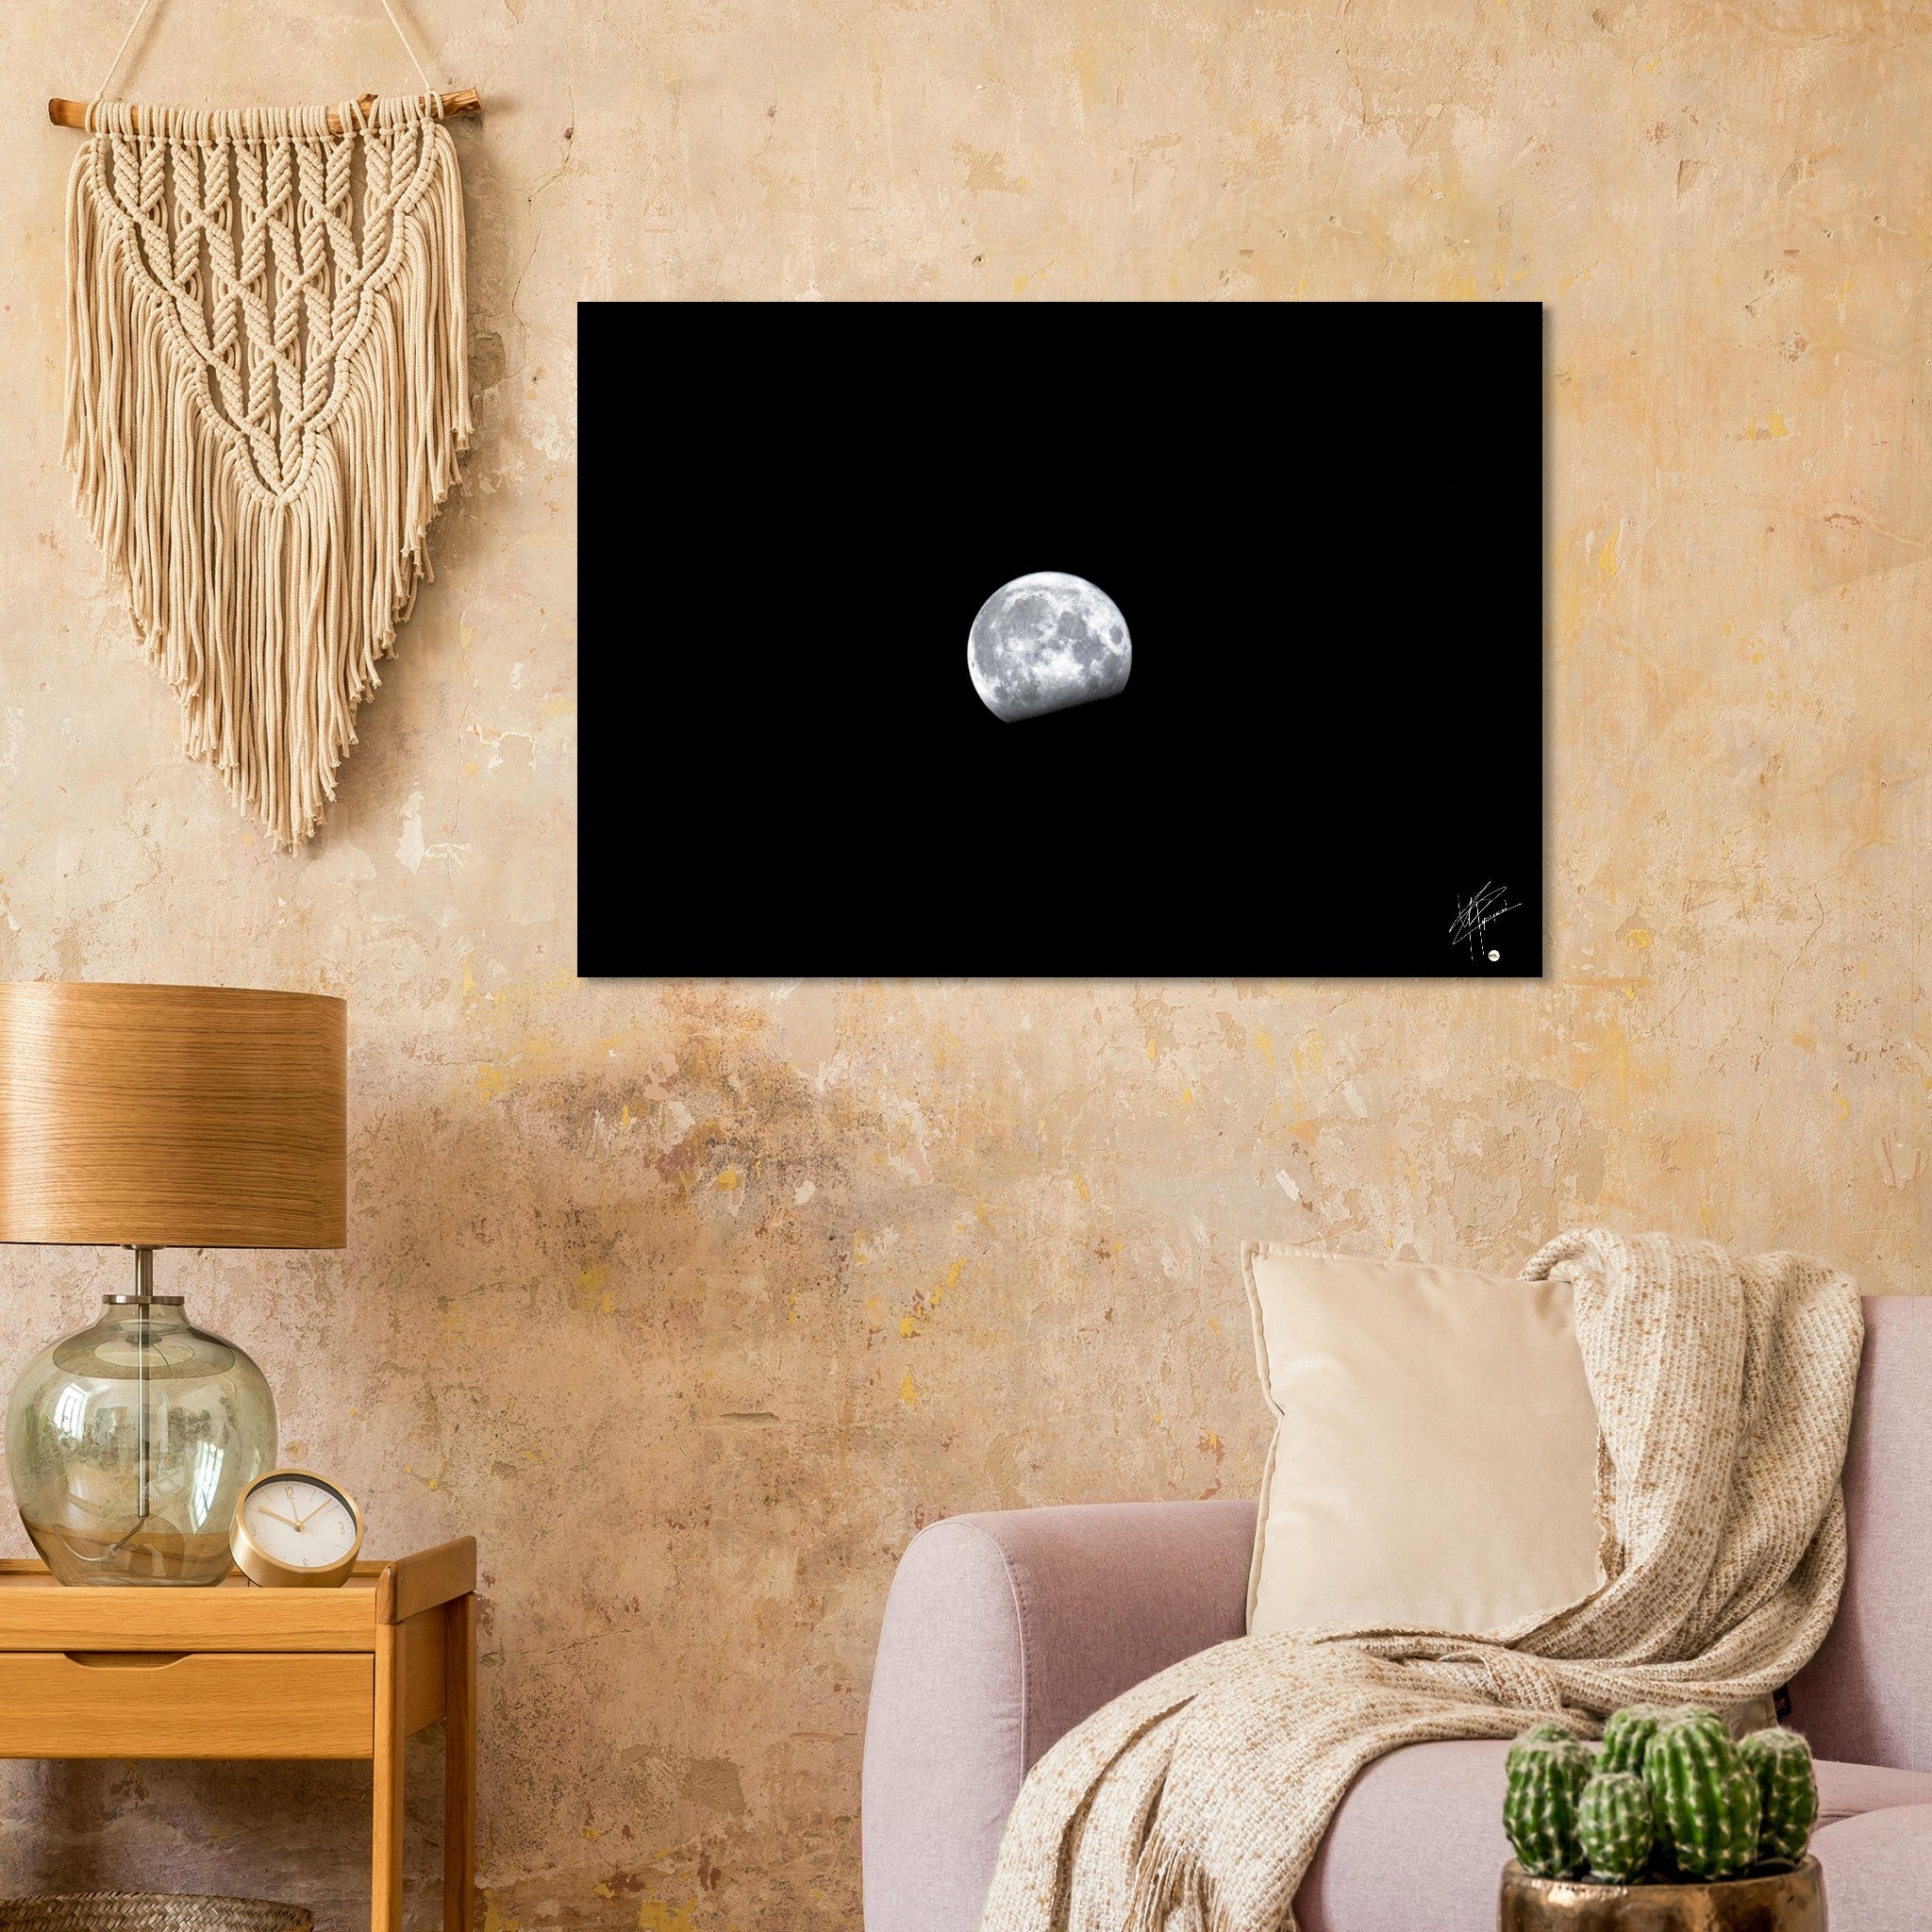 Image détaillée de la Lune, imprimée sur un tableau en aluminium DIBOND® haut de gamme, mettant en évidence chaque cratère et aspect de notre satellite naturel.